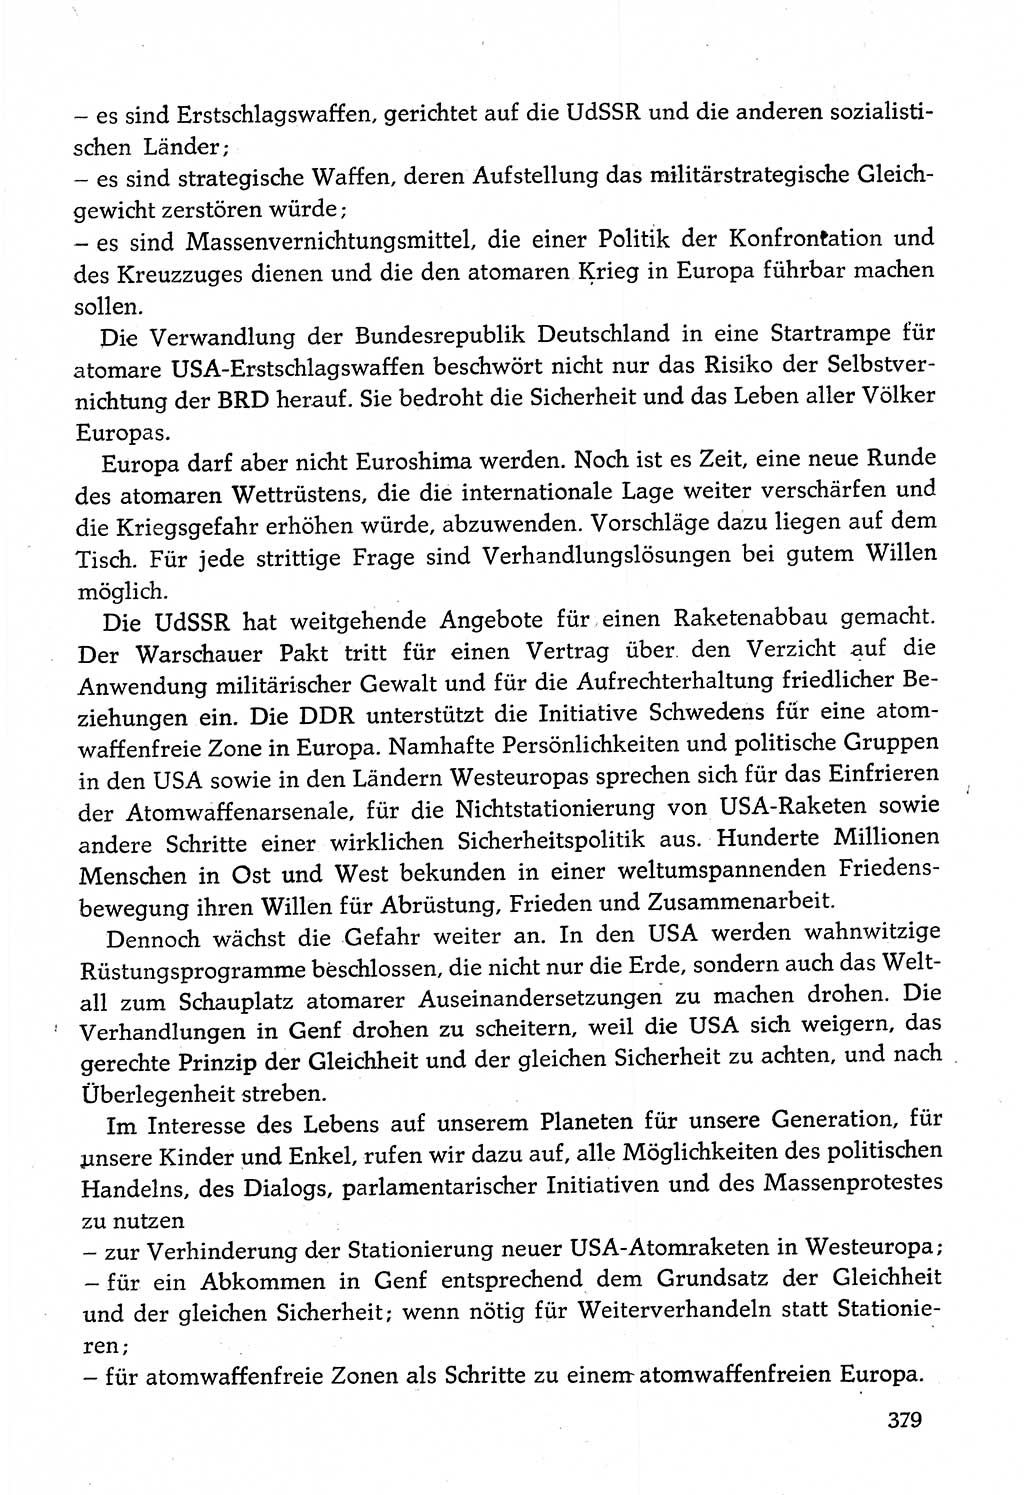 Dokumente der Sozialistischen Einheitspartei Deutschlands (SED) [Deutsche Demokratische Republik (DDR)] 1982-1983, Seite 379 (Dok. SED DDR 1982-1983, S. 379)